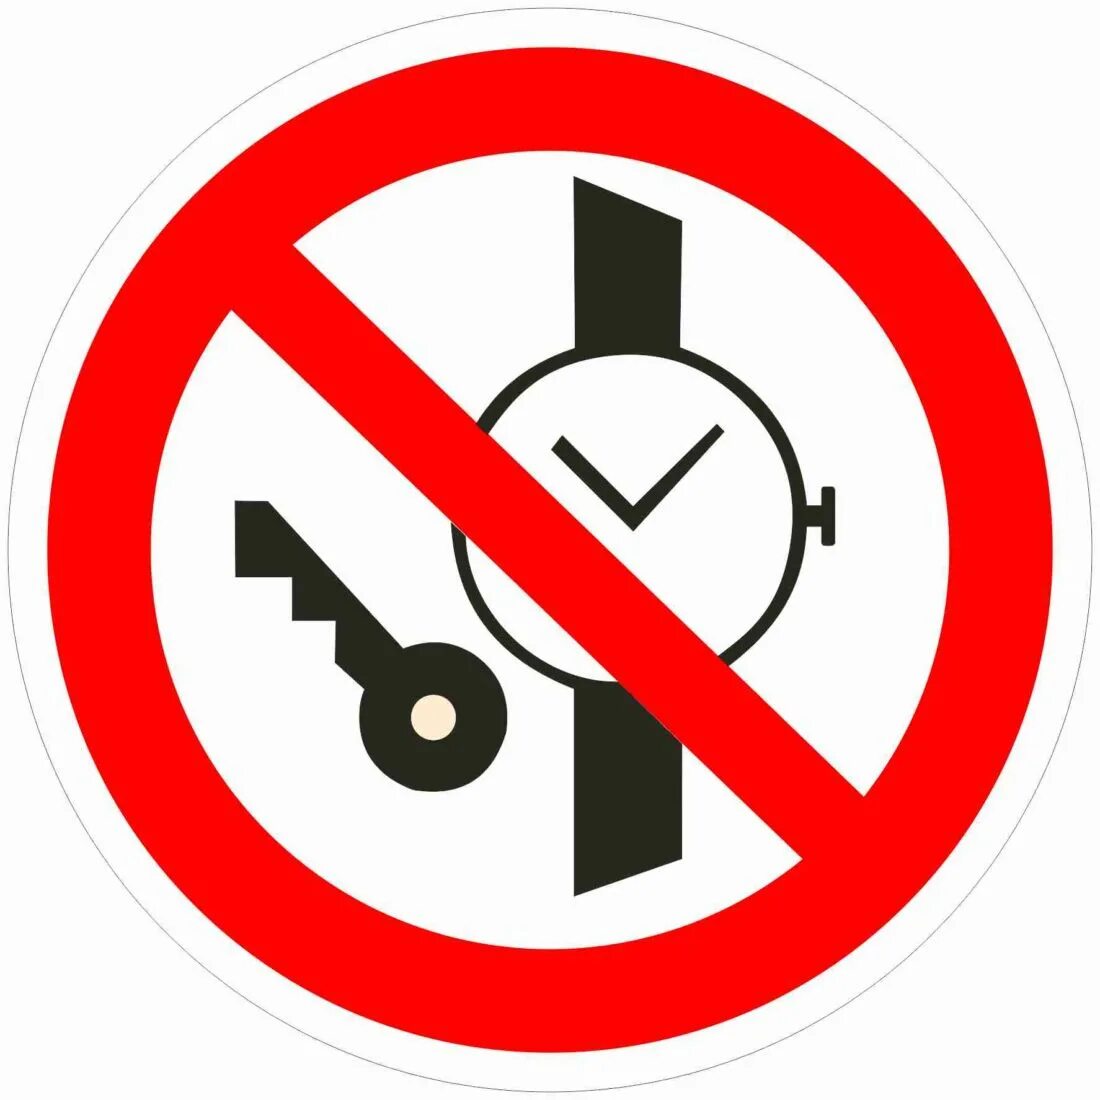 Металлические предметы запрещены. Знак запрета иметь при себе металлические предметы. Табличка проход с кардиостимулятором запрещен. Запрещающий знак кардиостимулятор. Почему в инструкции людям с кардиостимуляторами запрещается